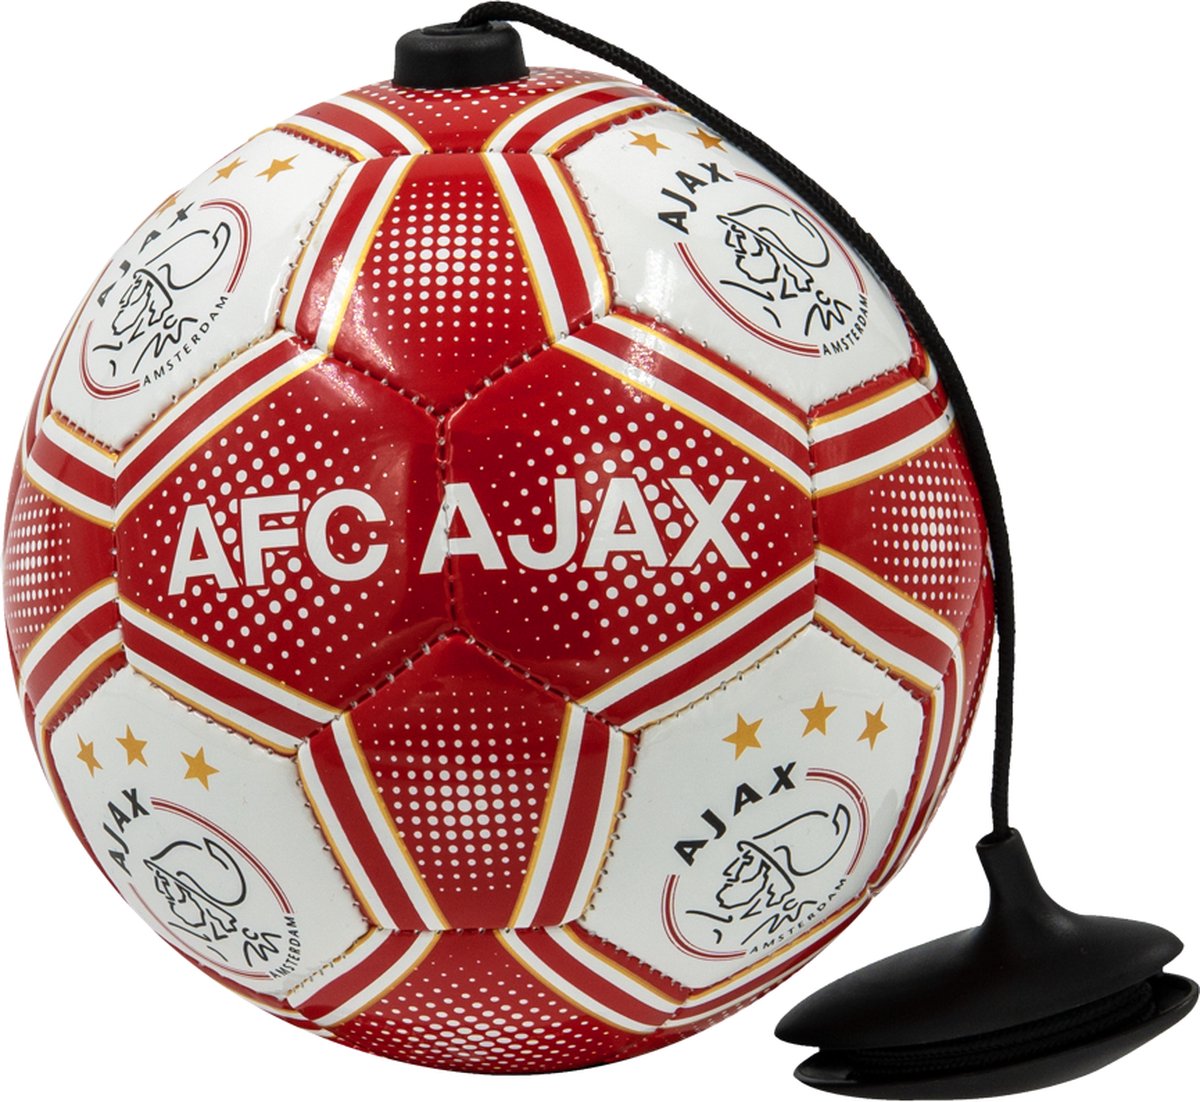 Ajax-techniek bal rood - Ajax